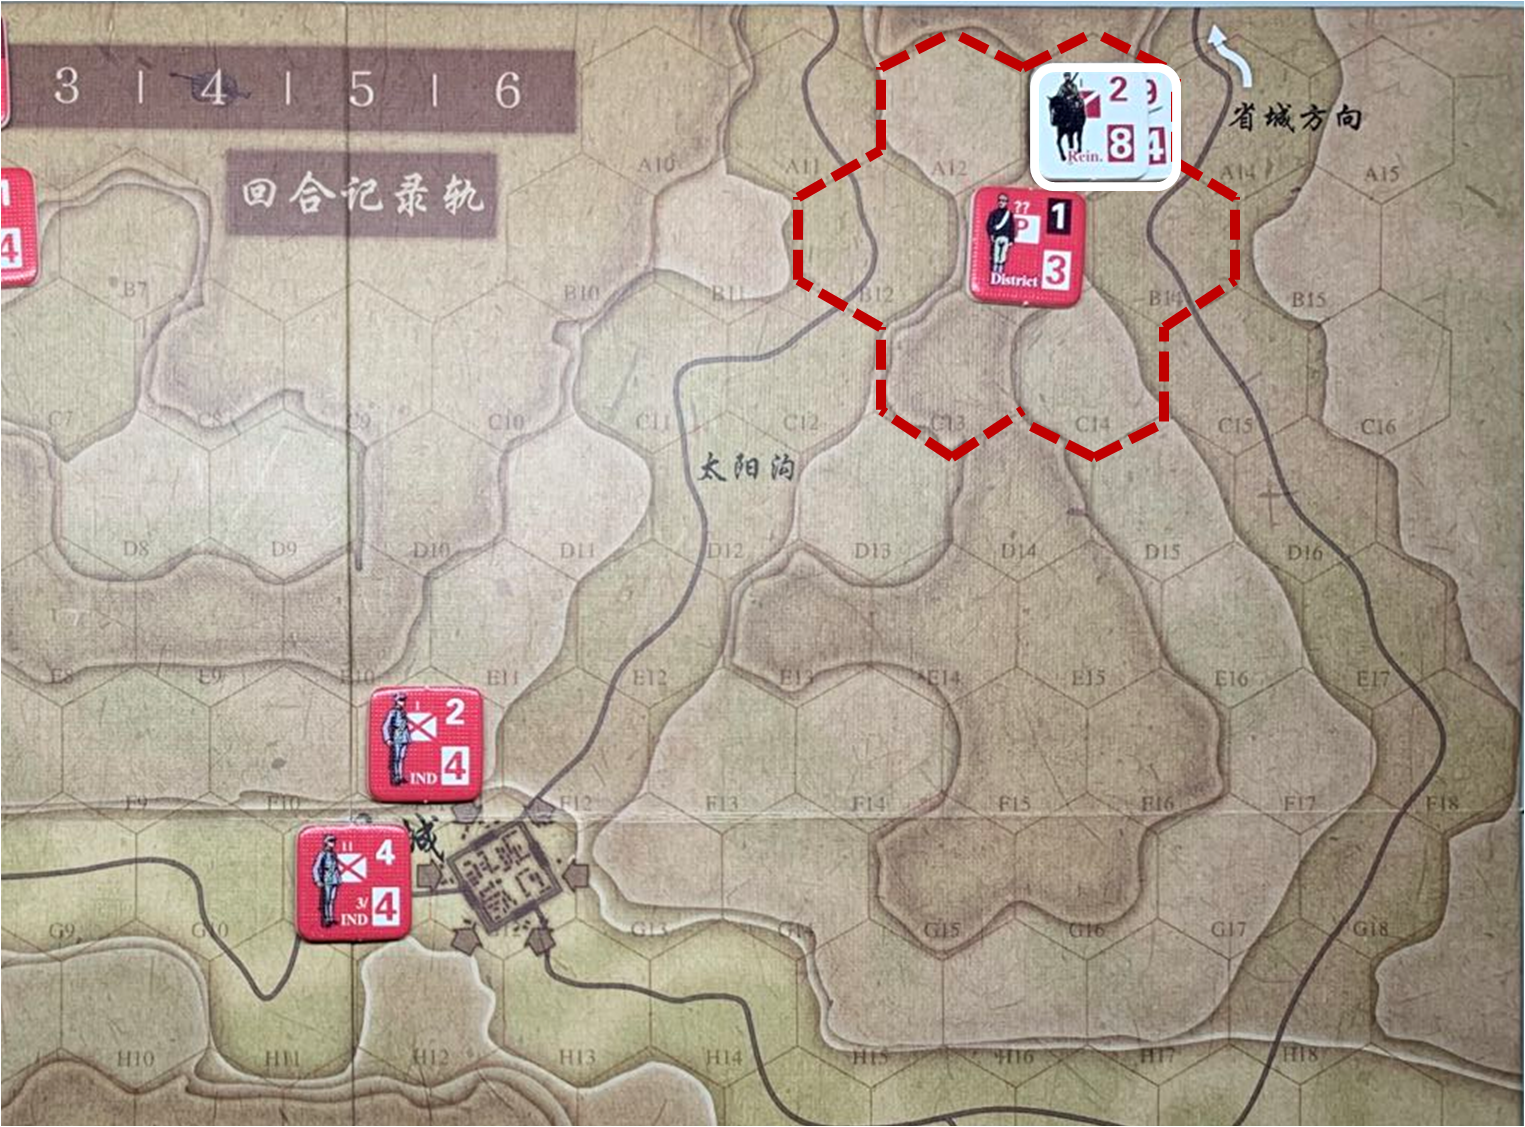 第二回合省城方向日军增援部队（A13）对于移动命令2的执行计划与结果